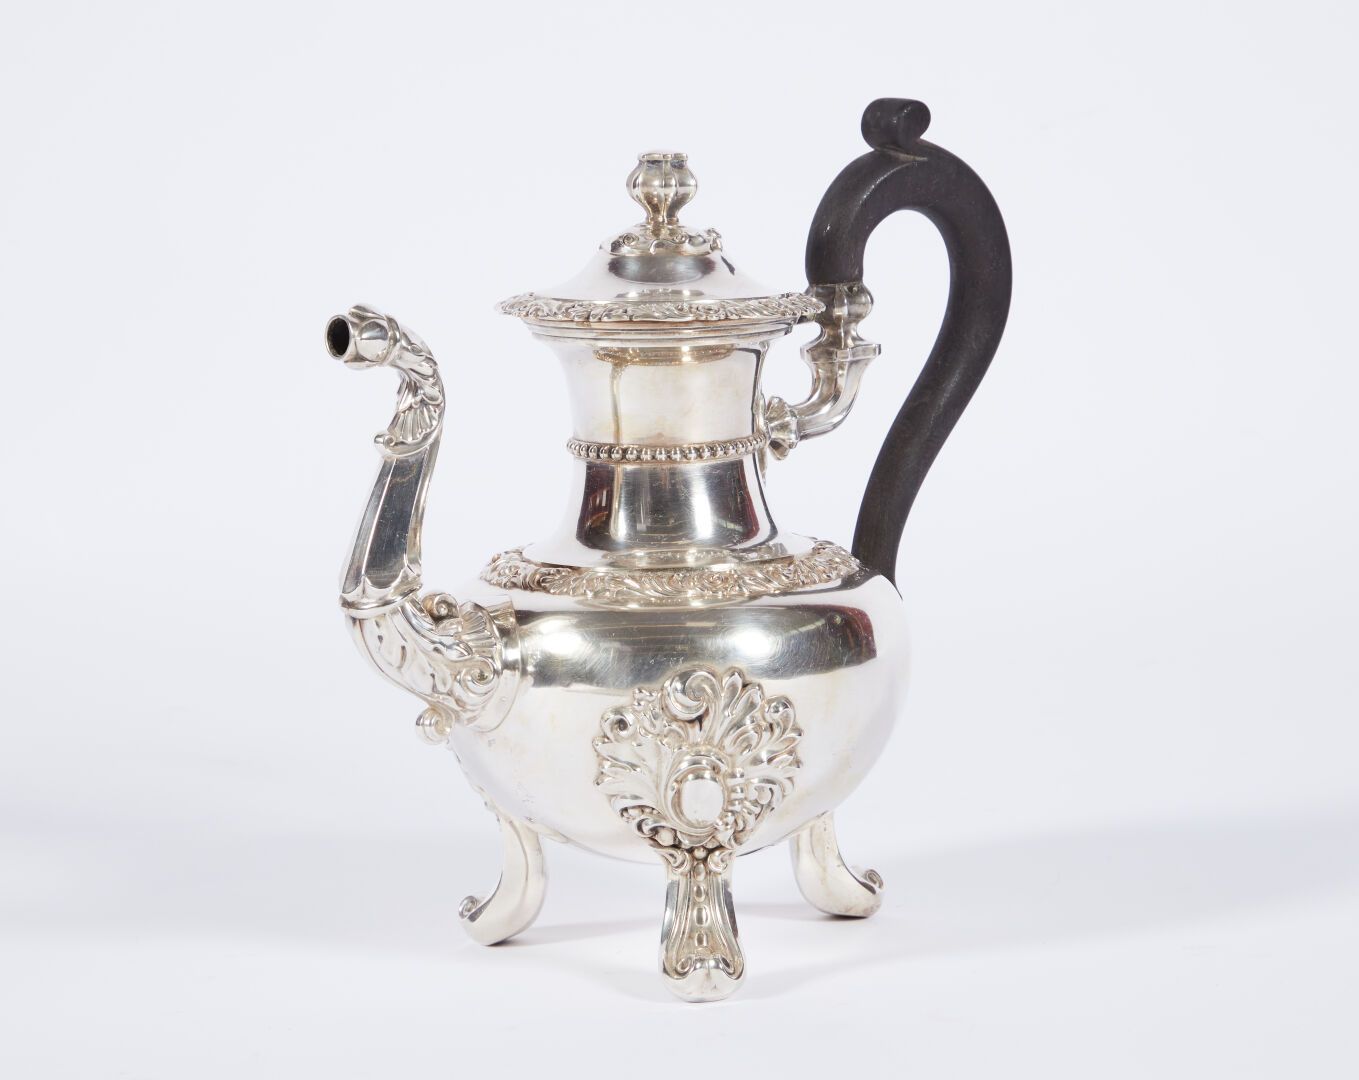 Null Eine Teekanne aus Silber im Stil von Louis XV.

Minerva-Stempel

Bruttogewi&hellip;